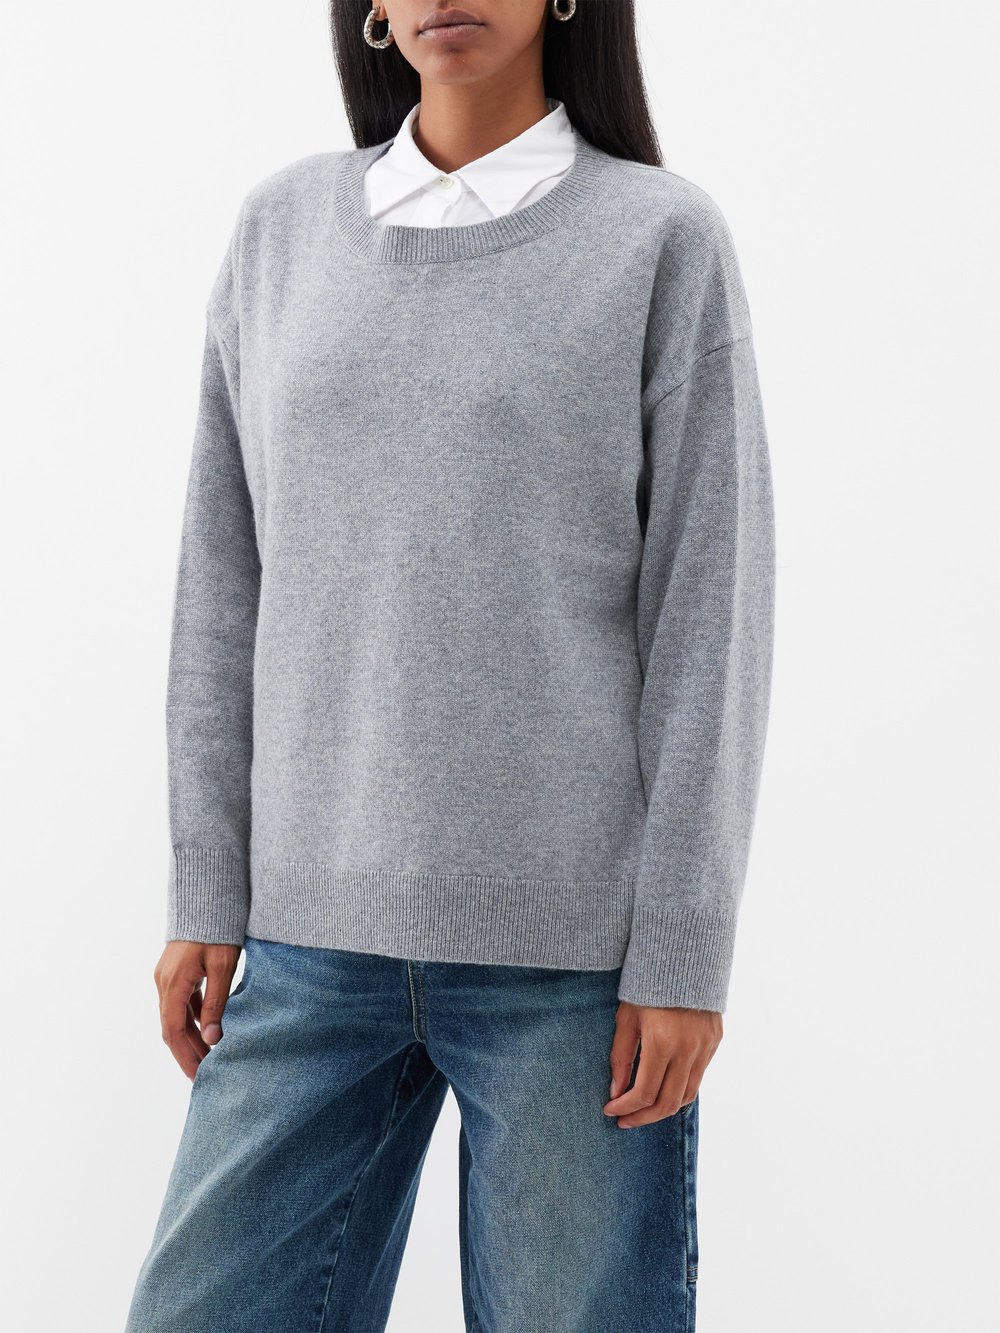 цена Кашемировый свитер nebelo с длинными рукавами Nili Lotan, серый